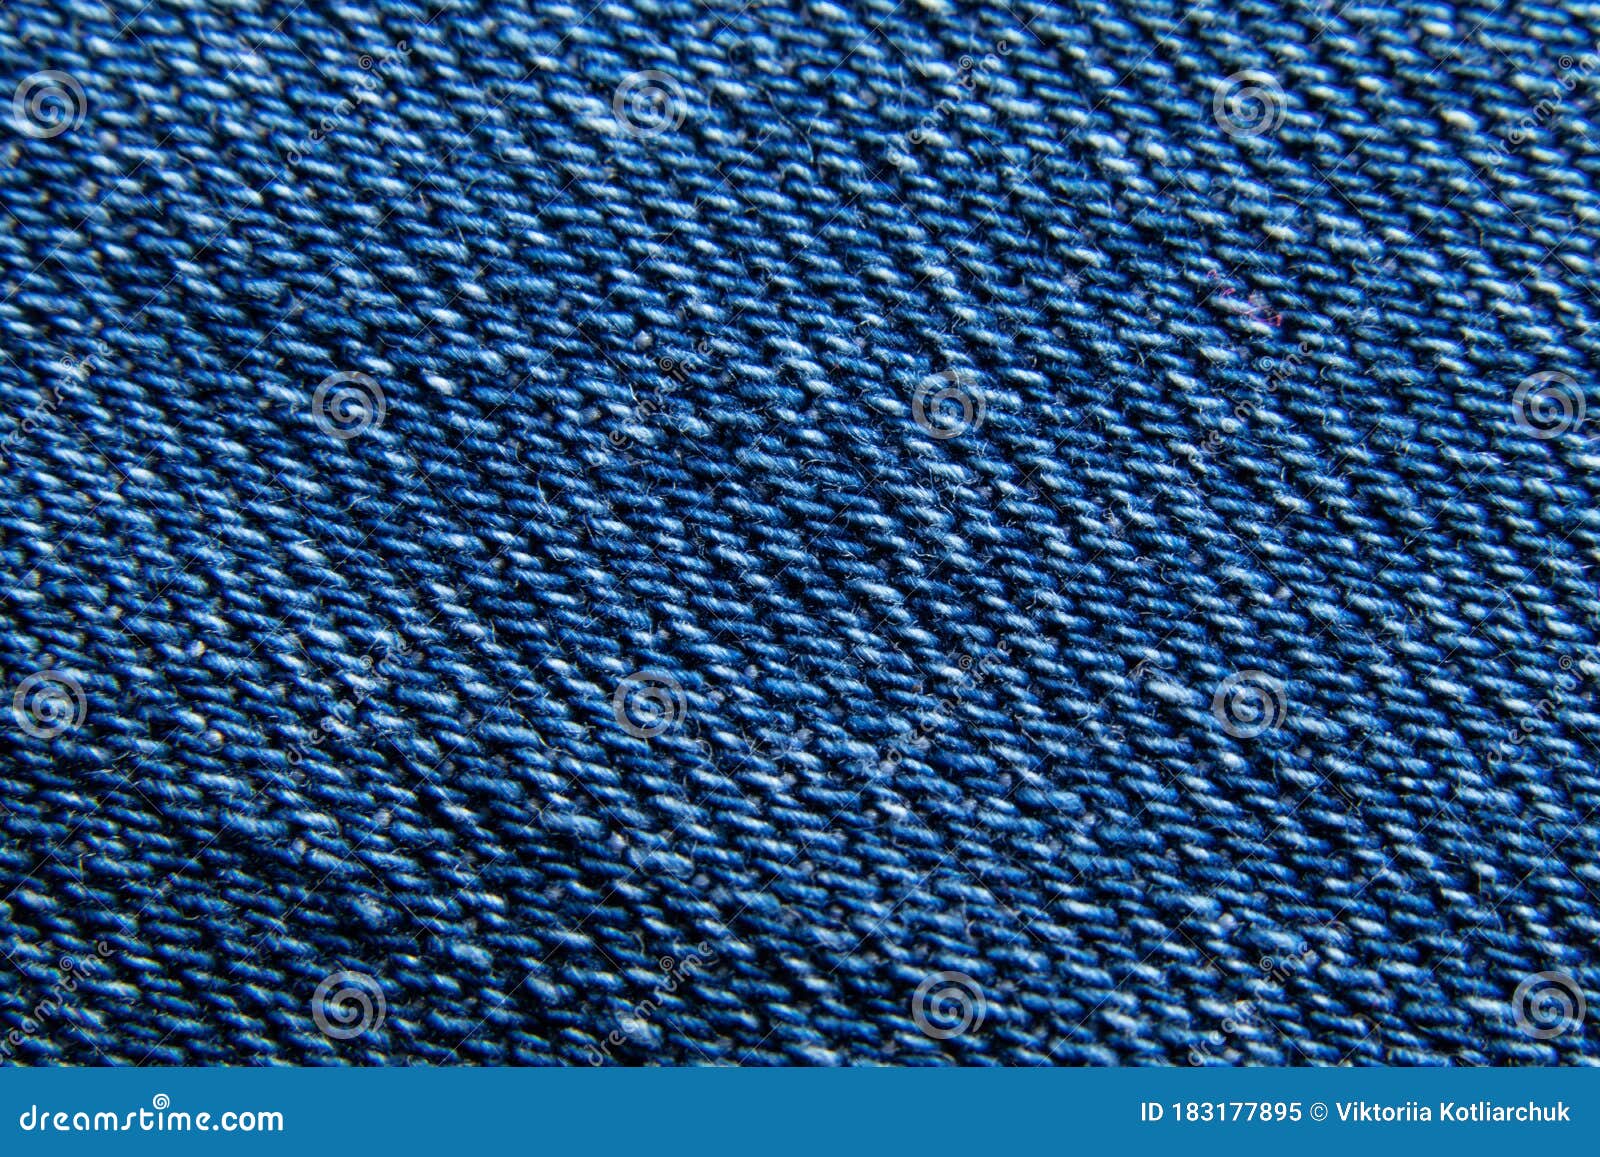 Light Blue Denim Macro Photo As Background Stock Image - Image of ...